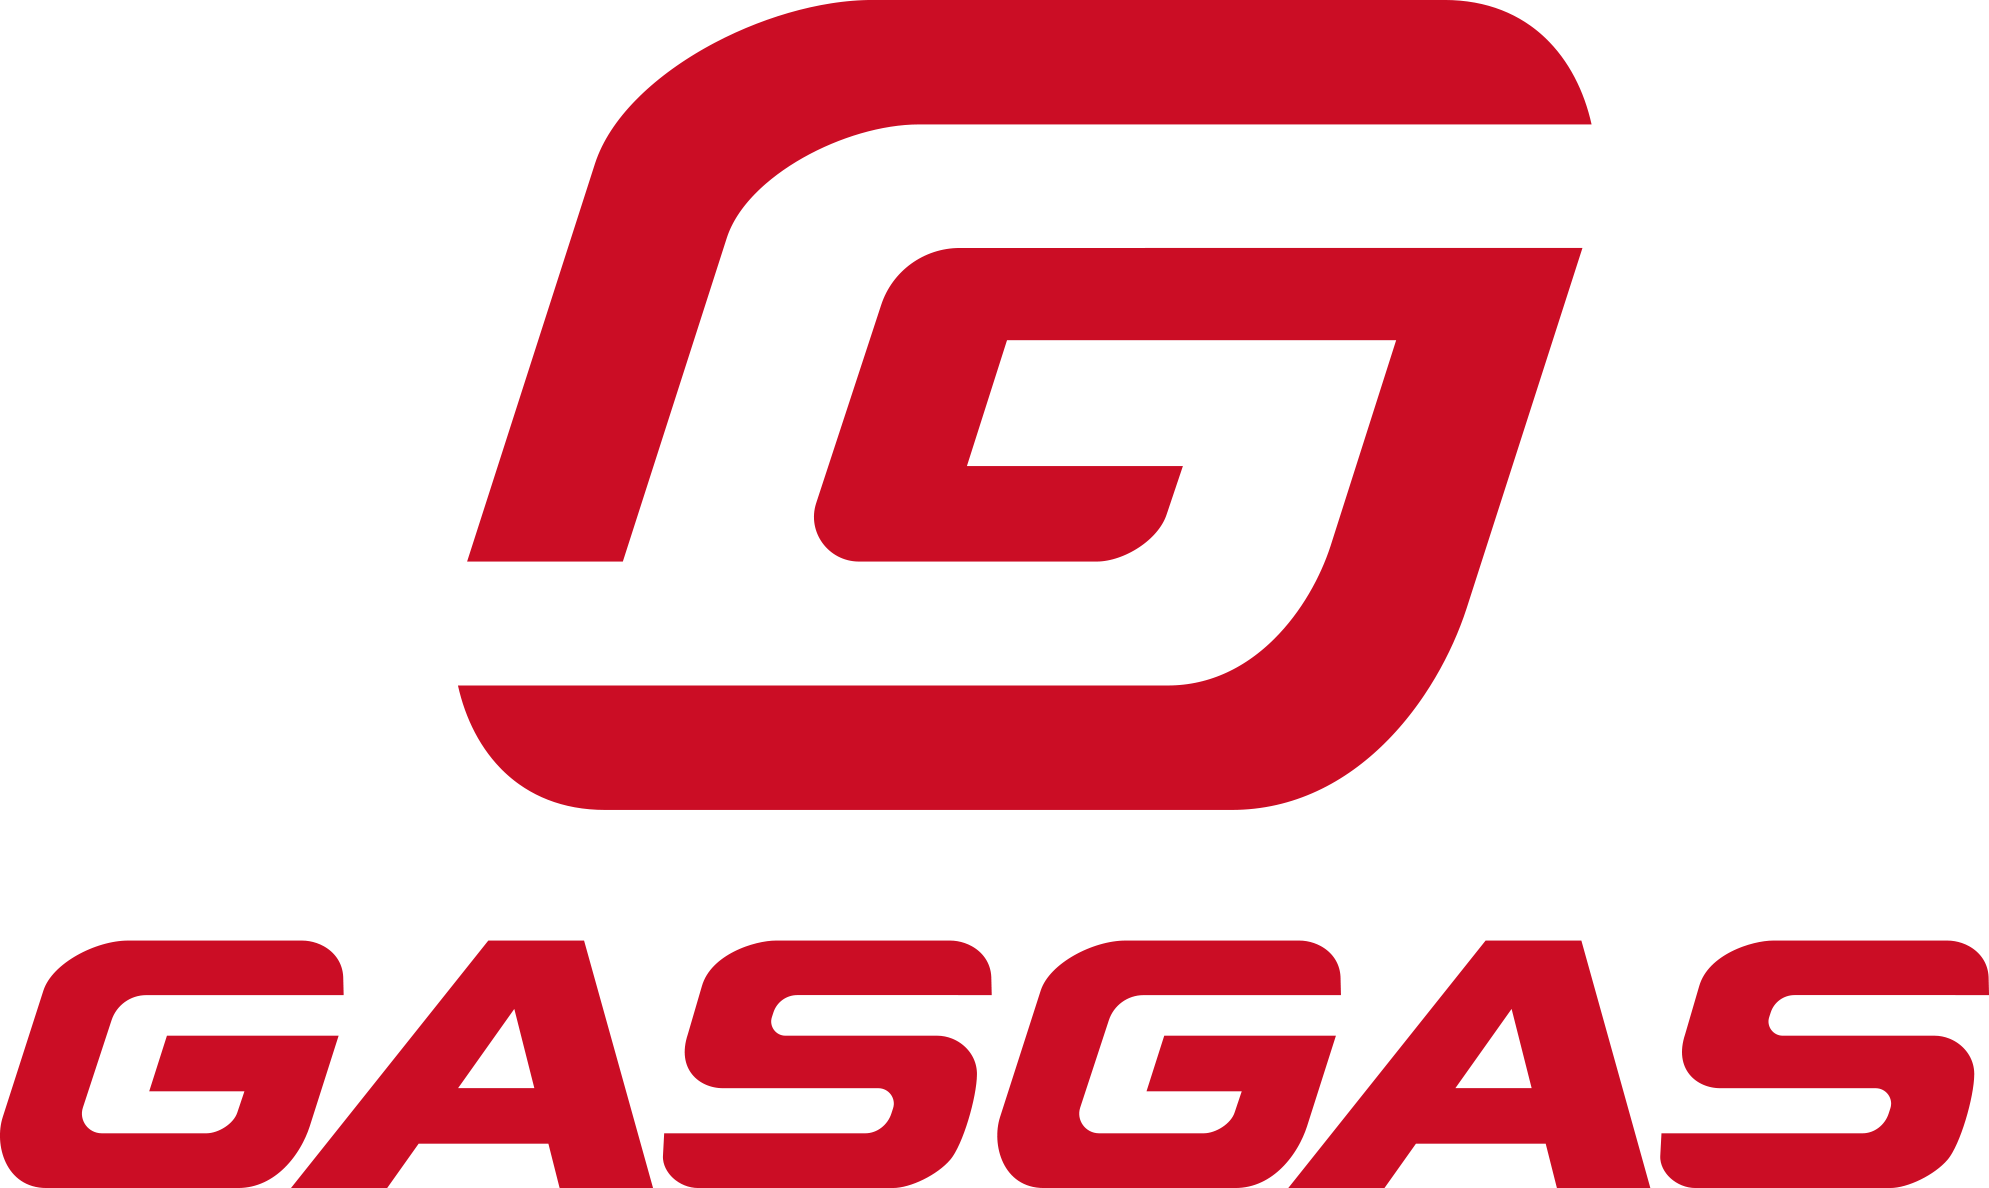 GASGAS Main Page